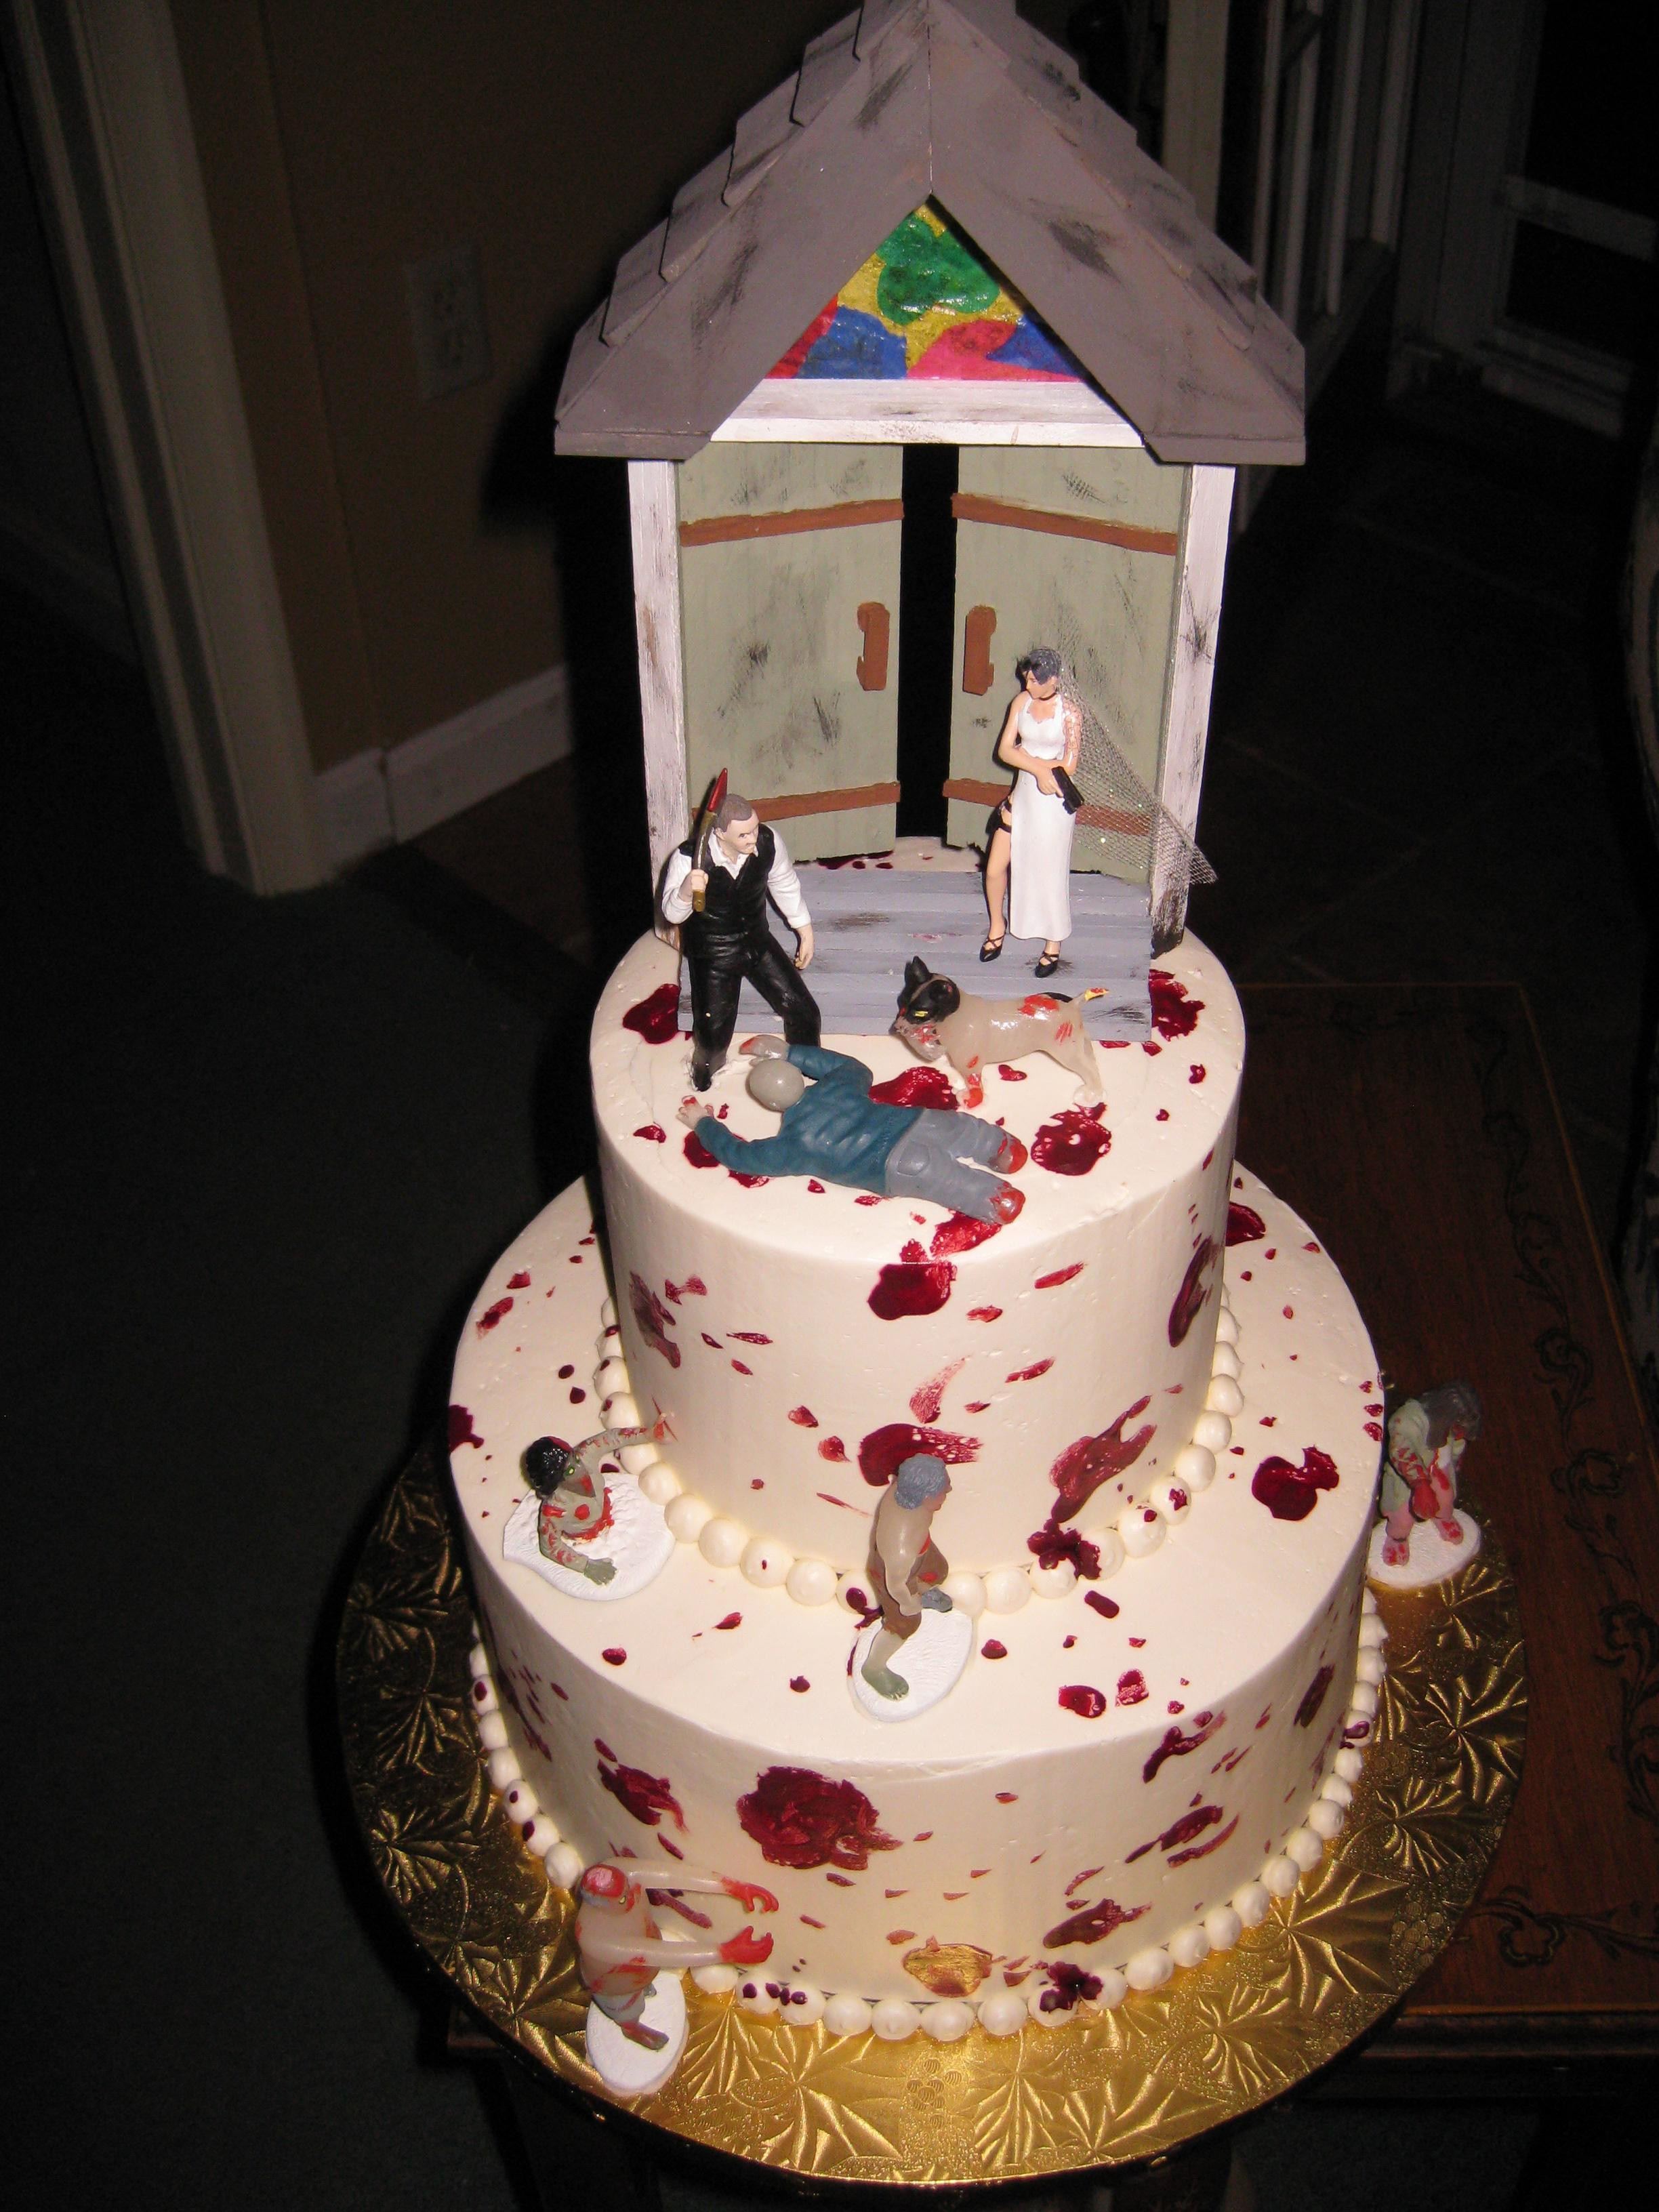 Awesome Wedding Cakes
 Awesome Wedding Cakes – NothingsNormal